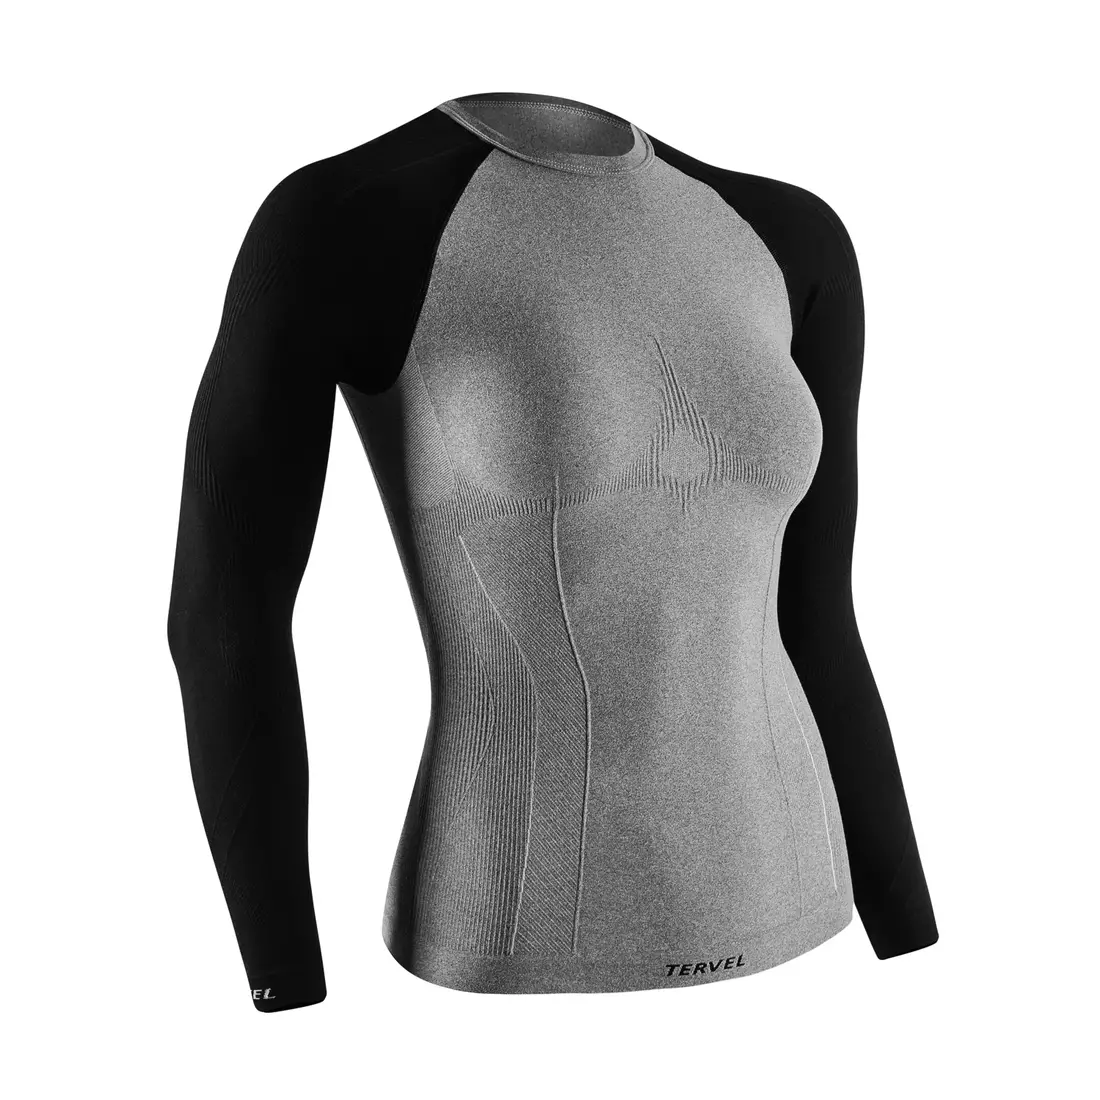 TERVEL COMFORTLINE 2002 - women's thermal T-shirt, long sleeve, color: Melange-black